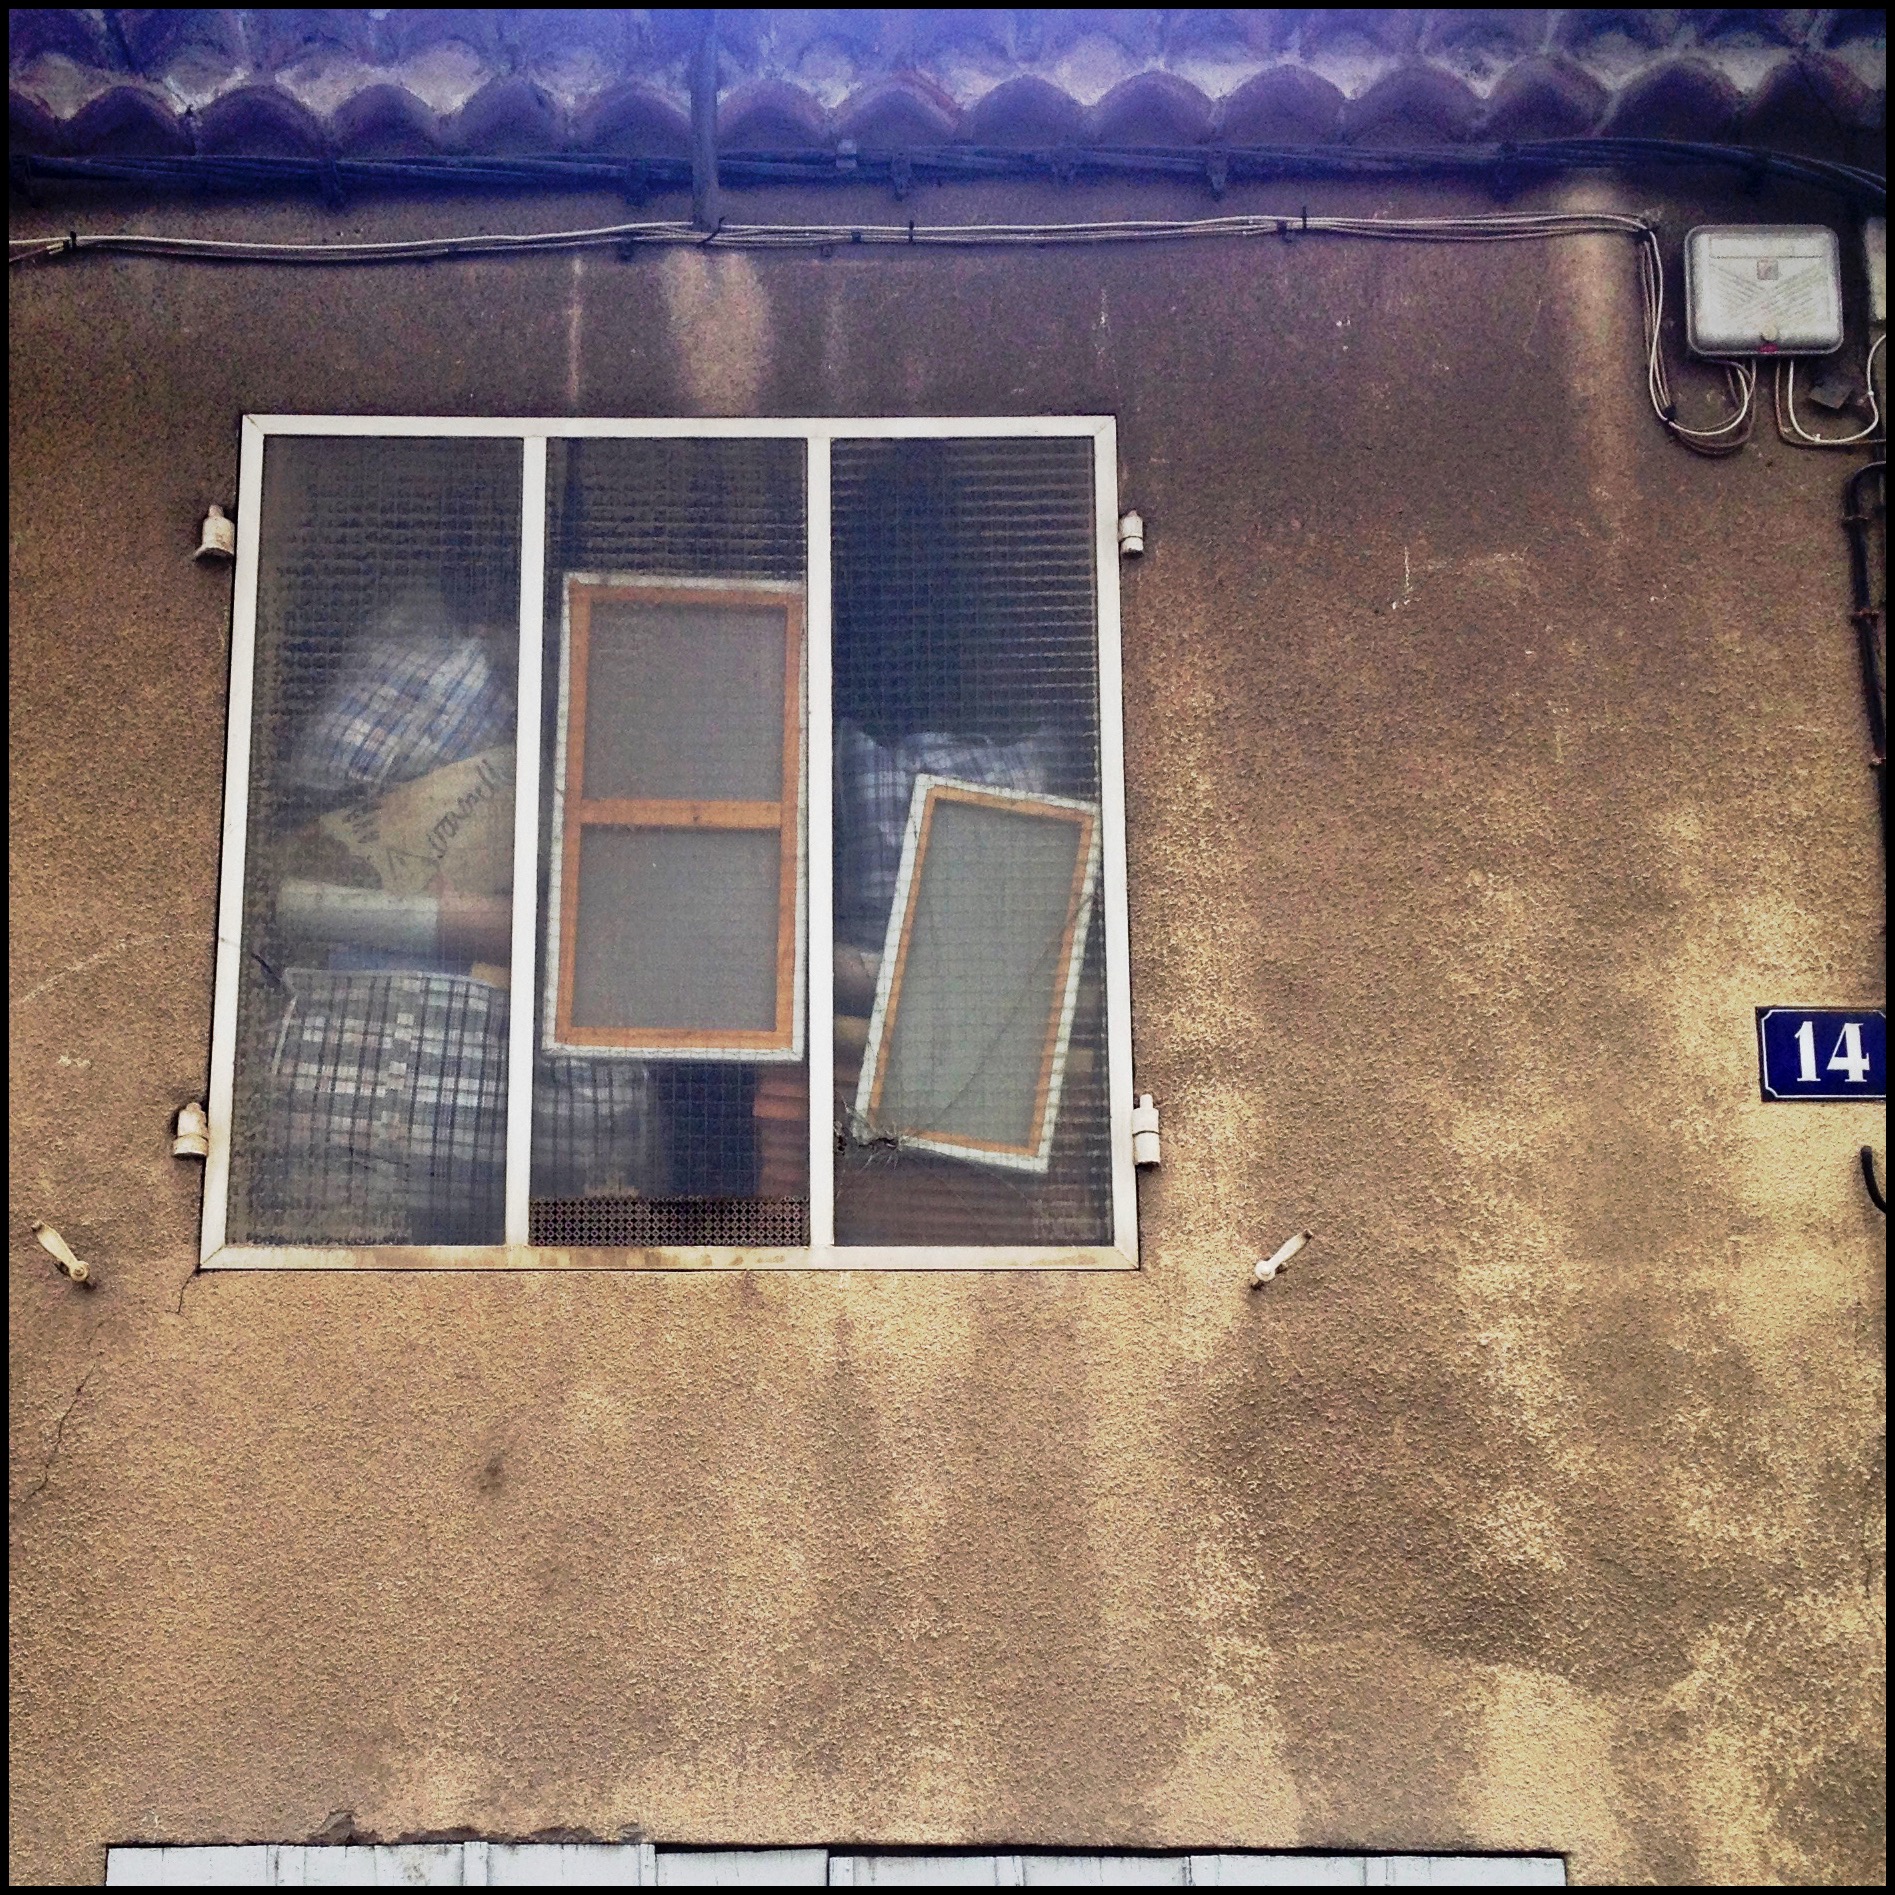 [Un jour, une Photo] Bazar sur fenêtre !